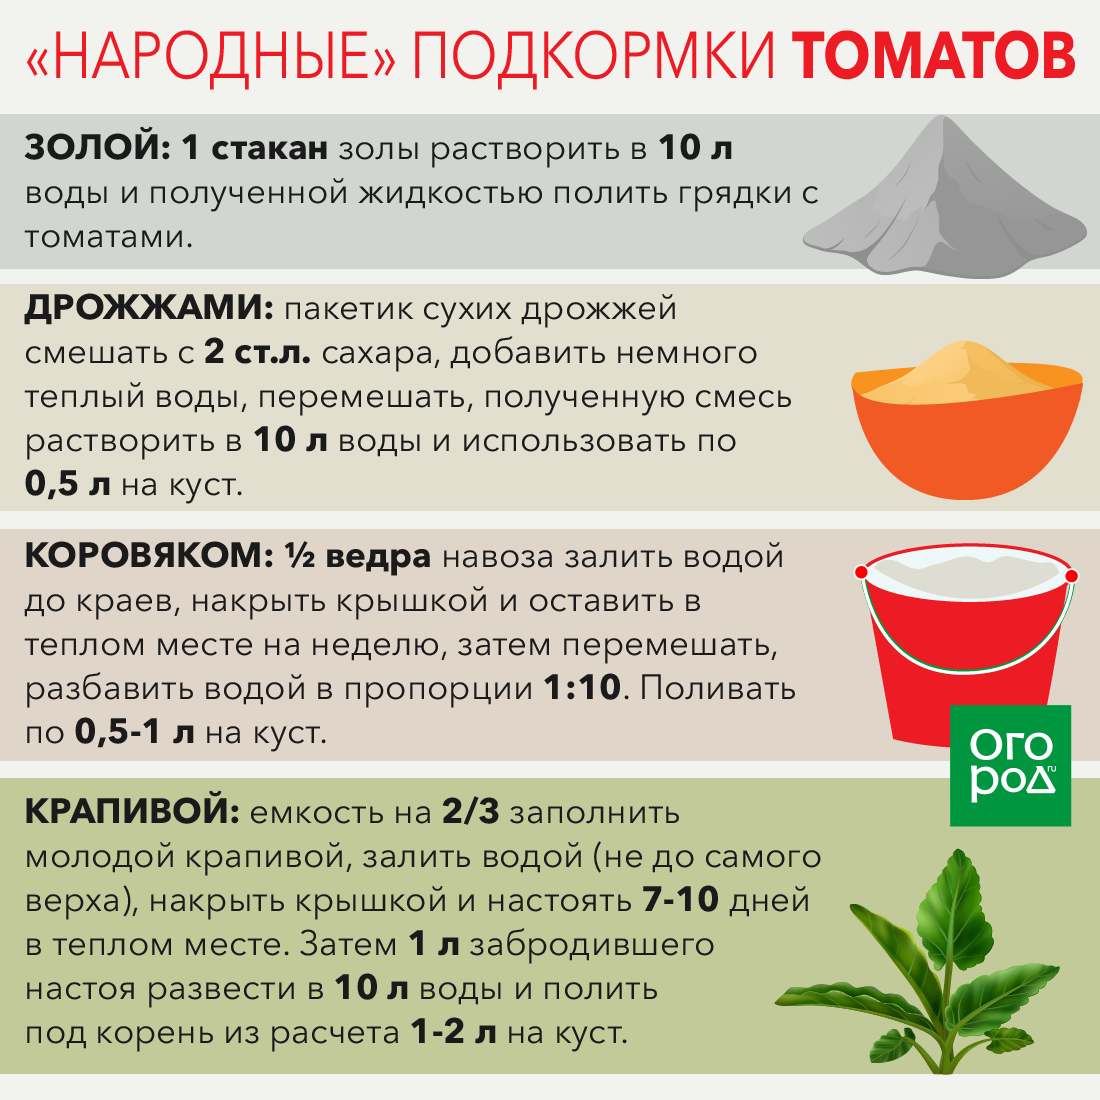 Подкормка огурцов в теплице: какие удобрения и когда использовать, чтобы были толстенькие